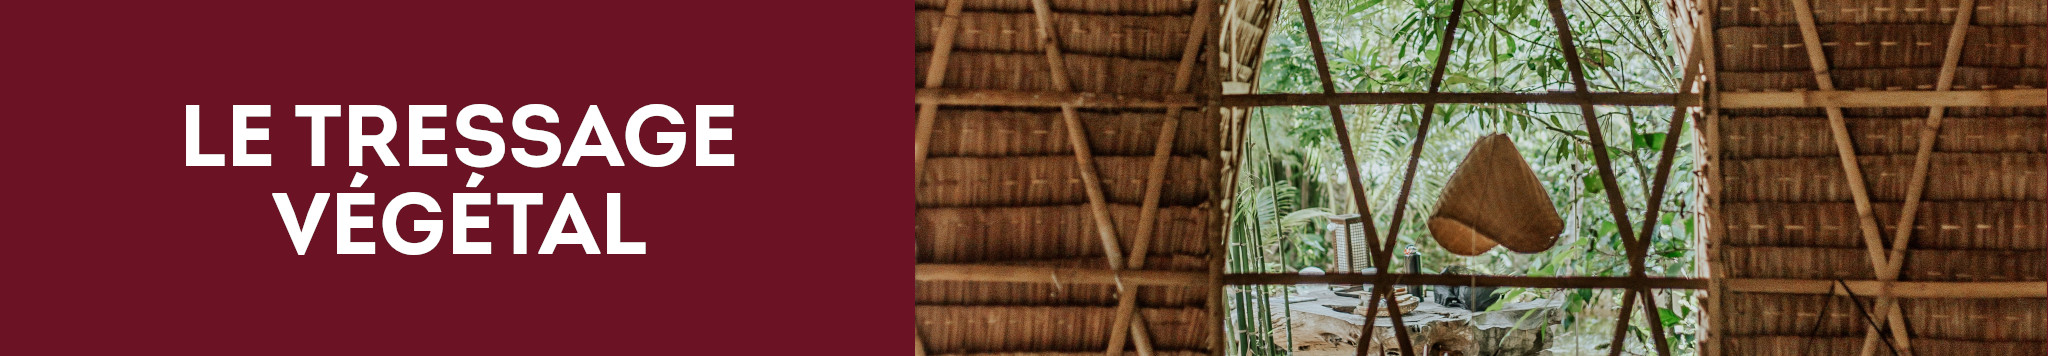 Le bambou, une ressource naturelle aux multiples usages - Blog jardin